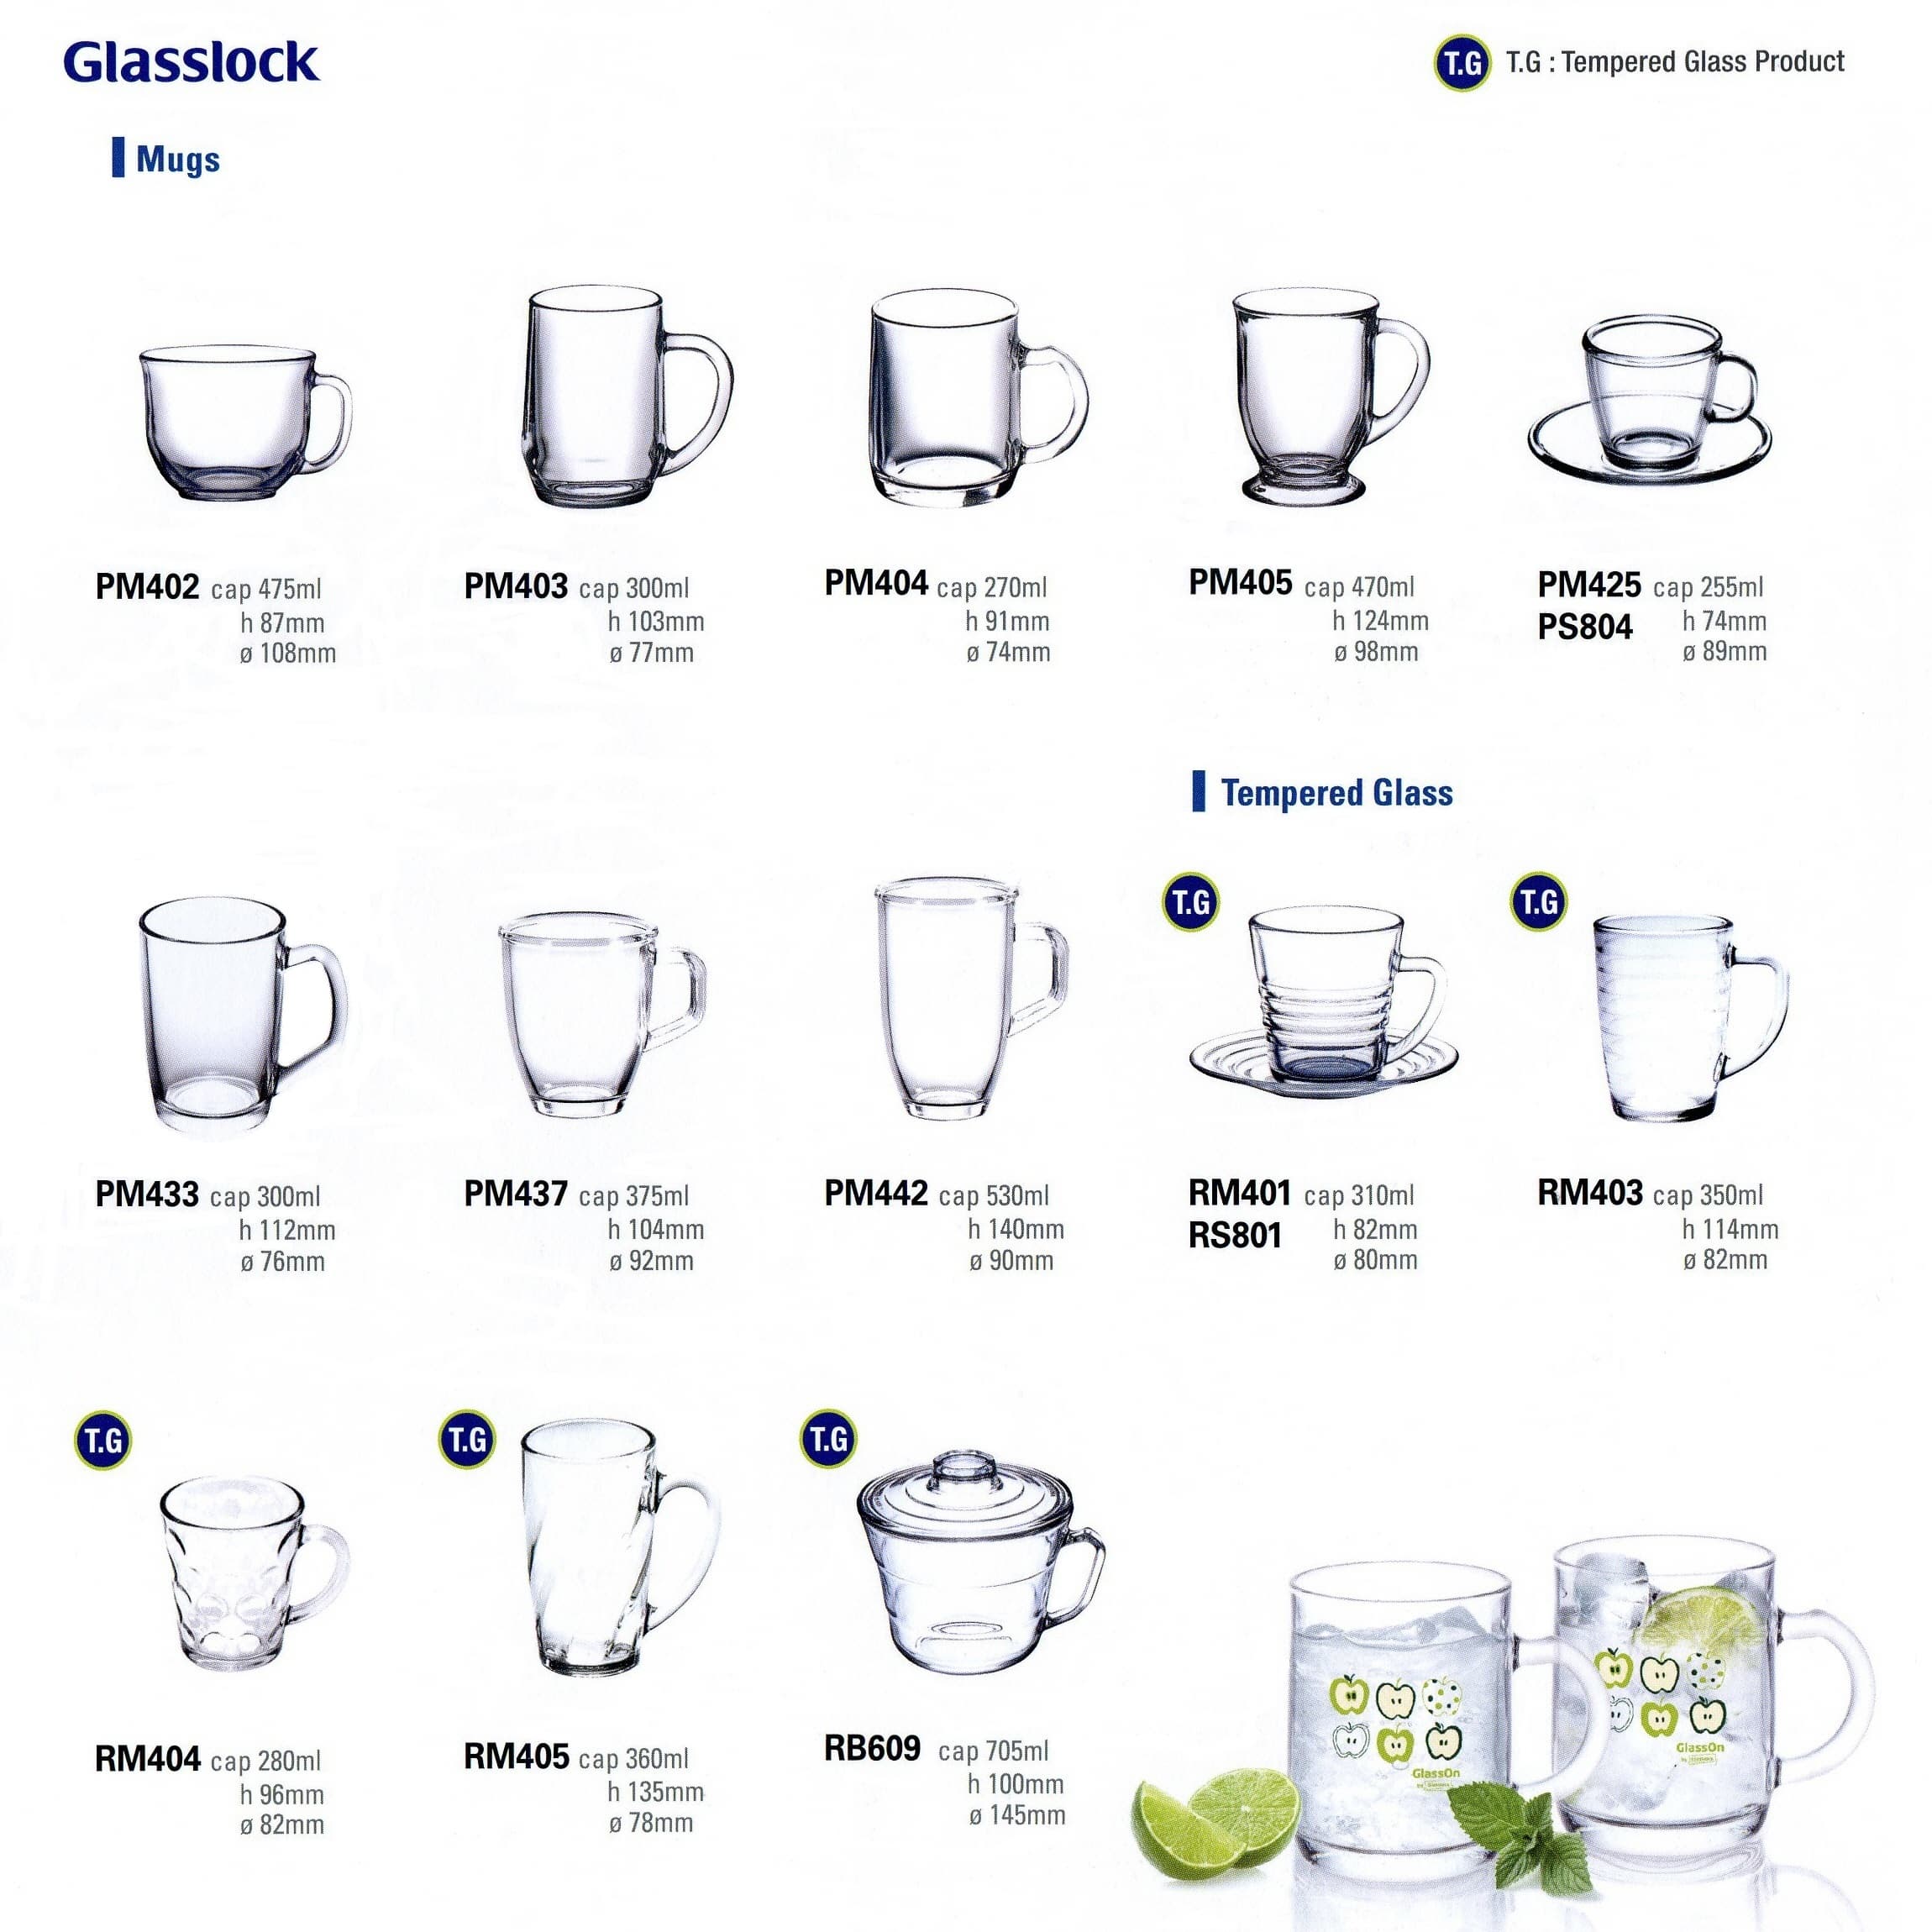 Glasslock Mugs